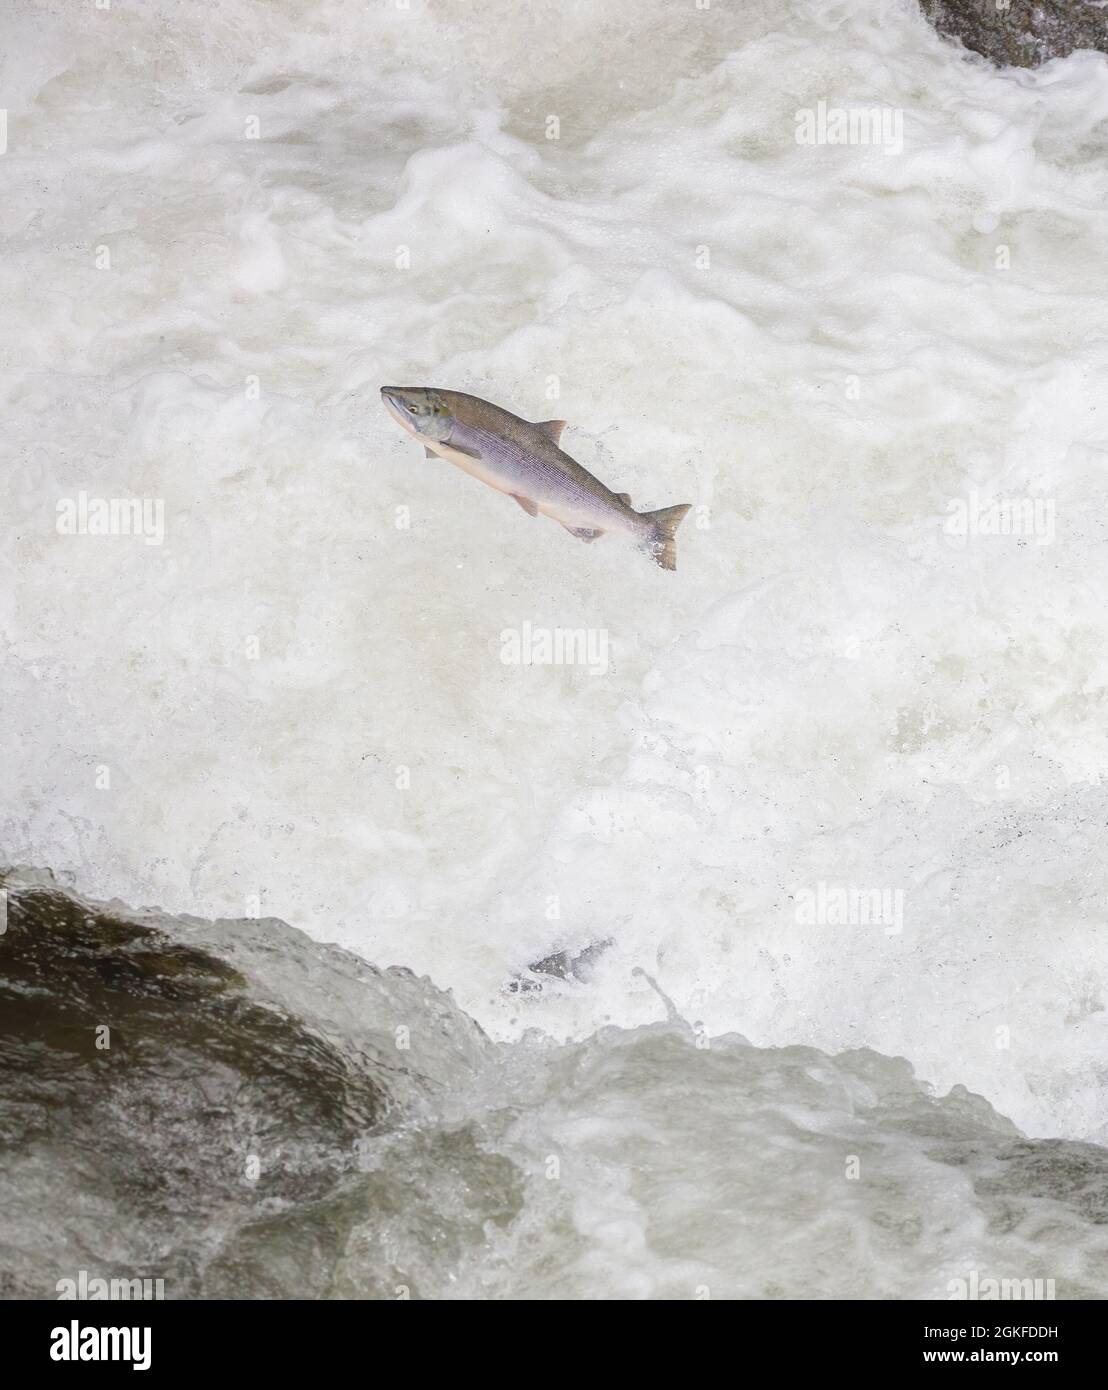 Ein Alaskan Lachs springt, während er stromaufwärts schwimmt Stockfoto